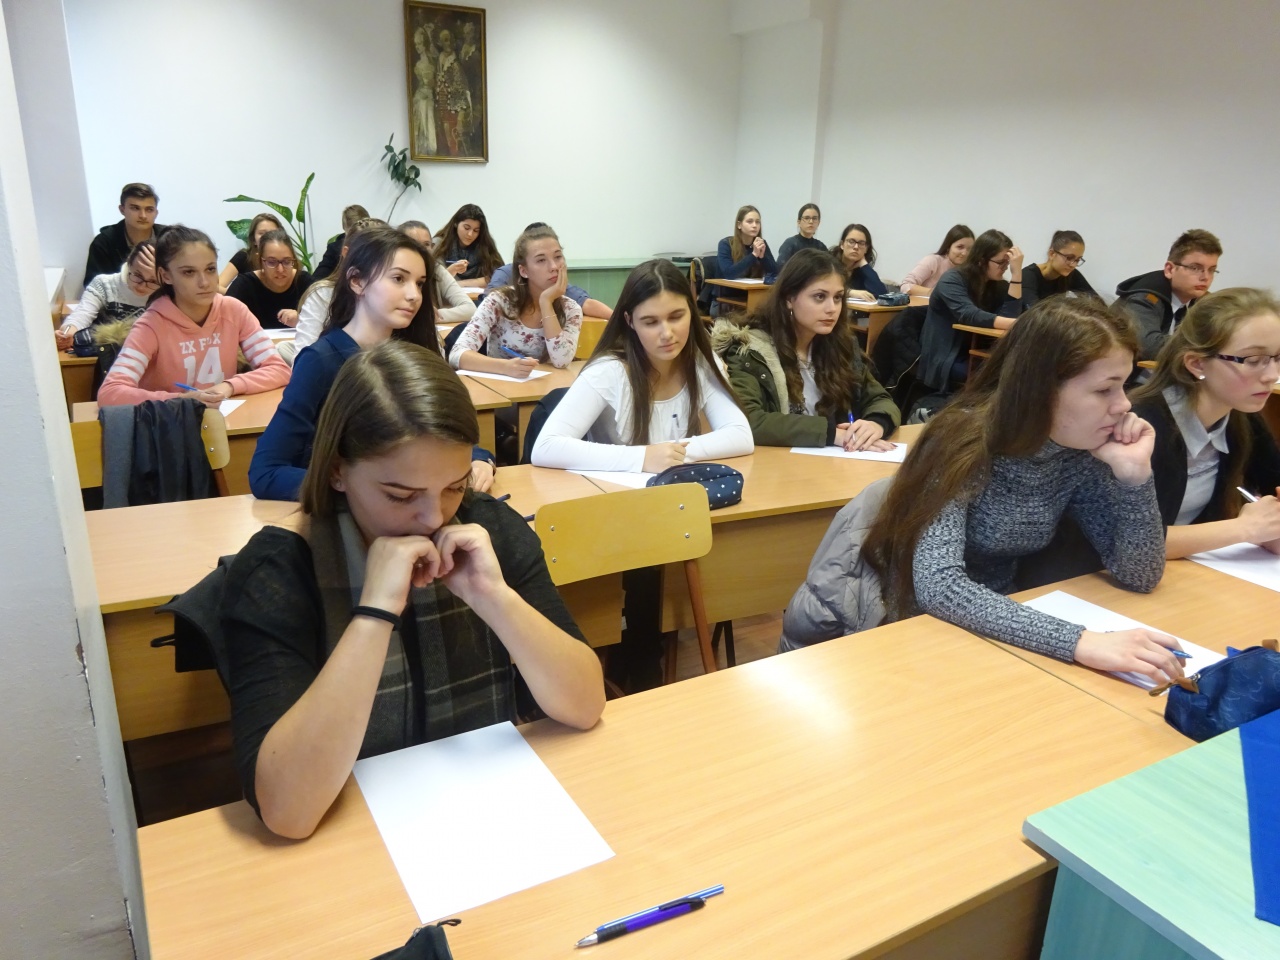 Mizser Lajos helyesírási verseny az egyetemen – 24 diák érkezett a megmérettetésre